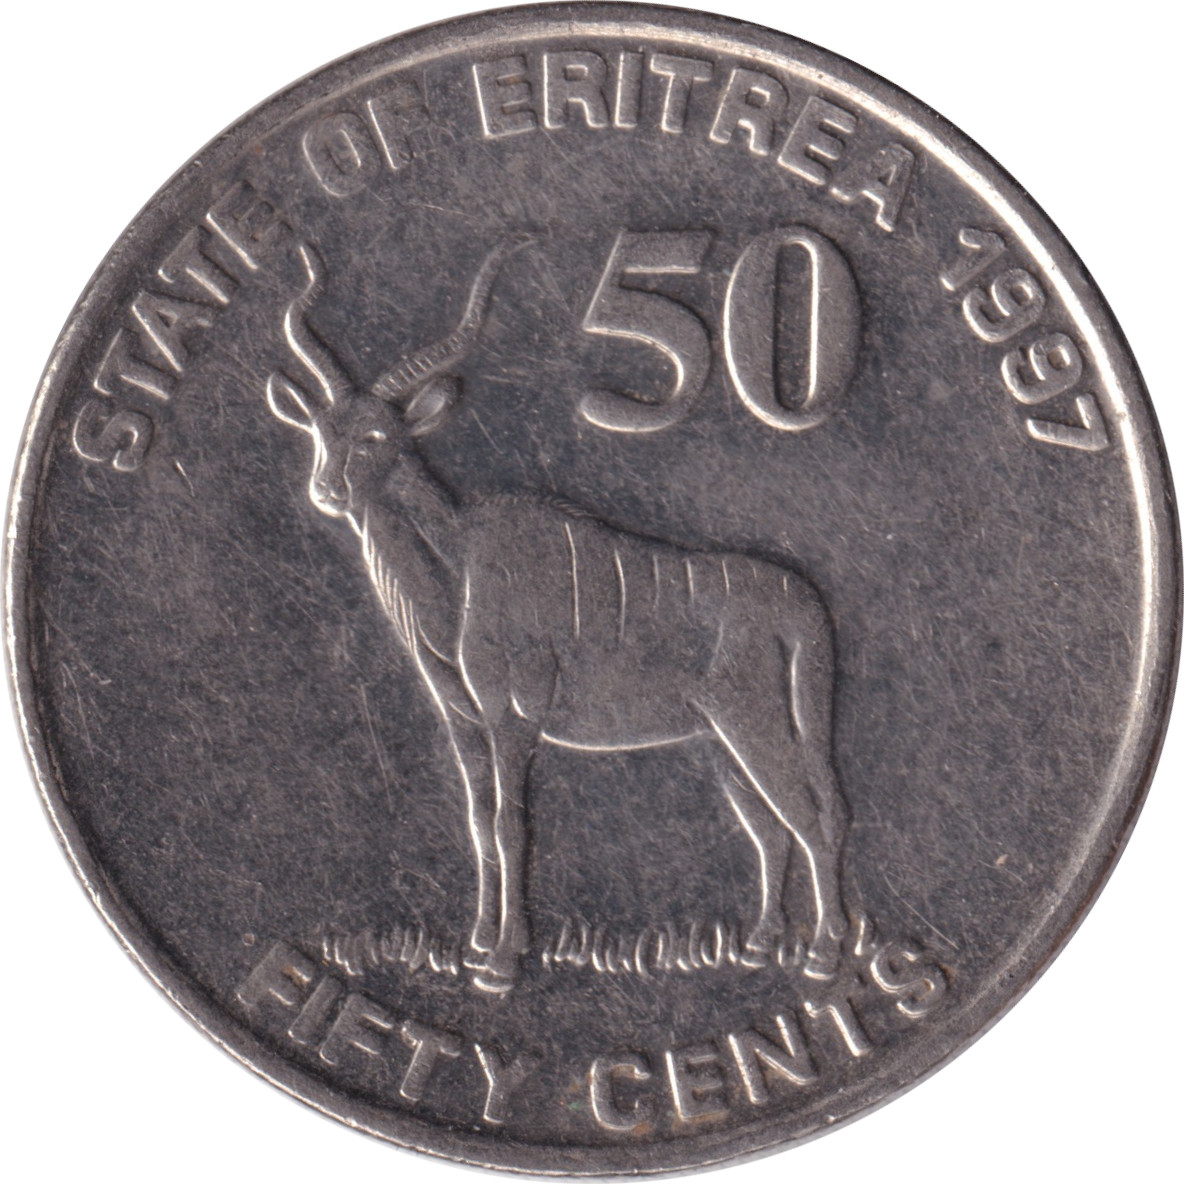 50 cents - Gazelle